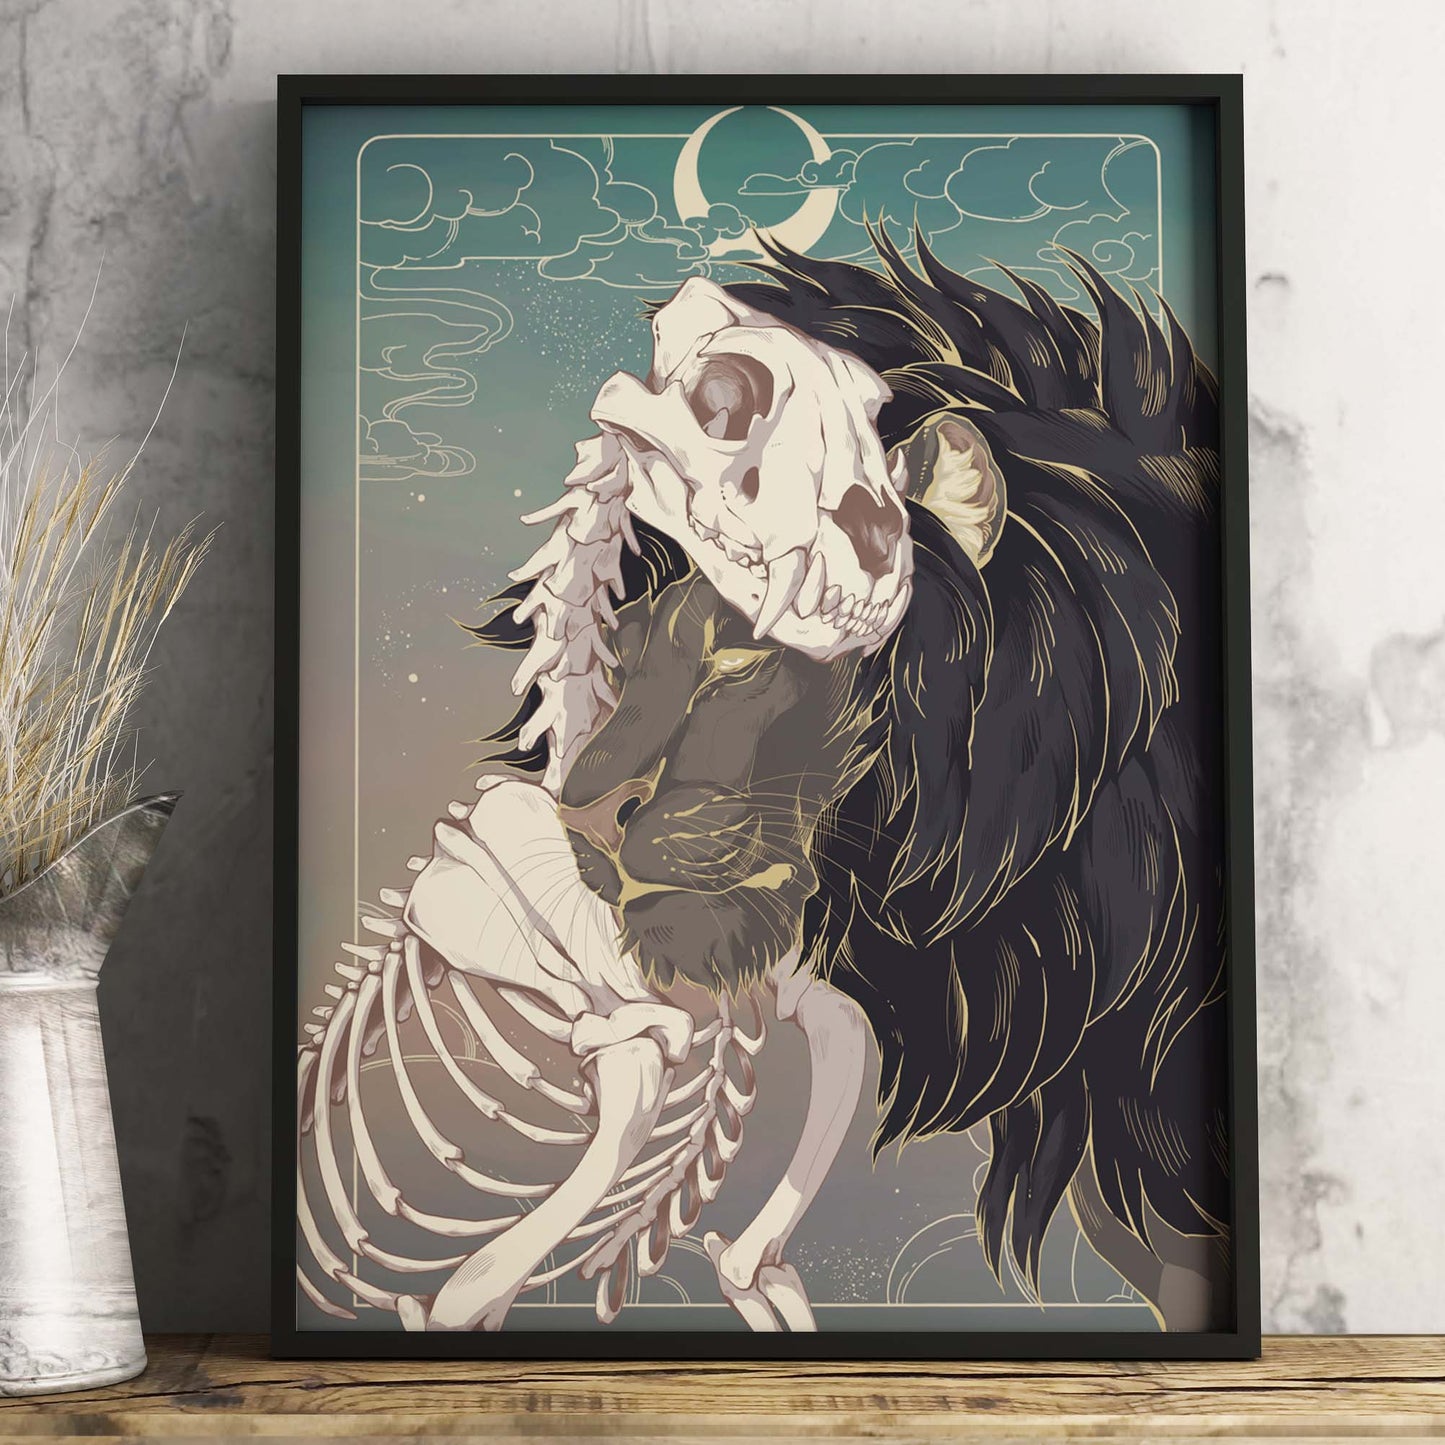 Kunstdruck "Grief Lion" von Gren Art